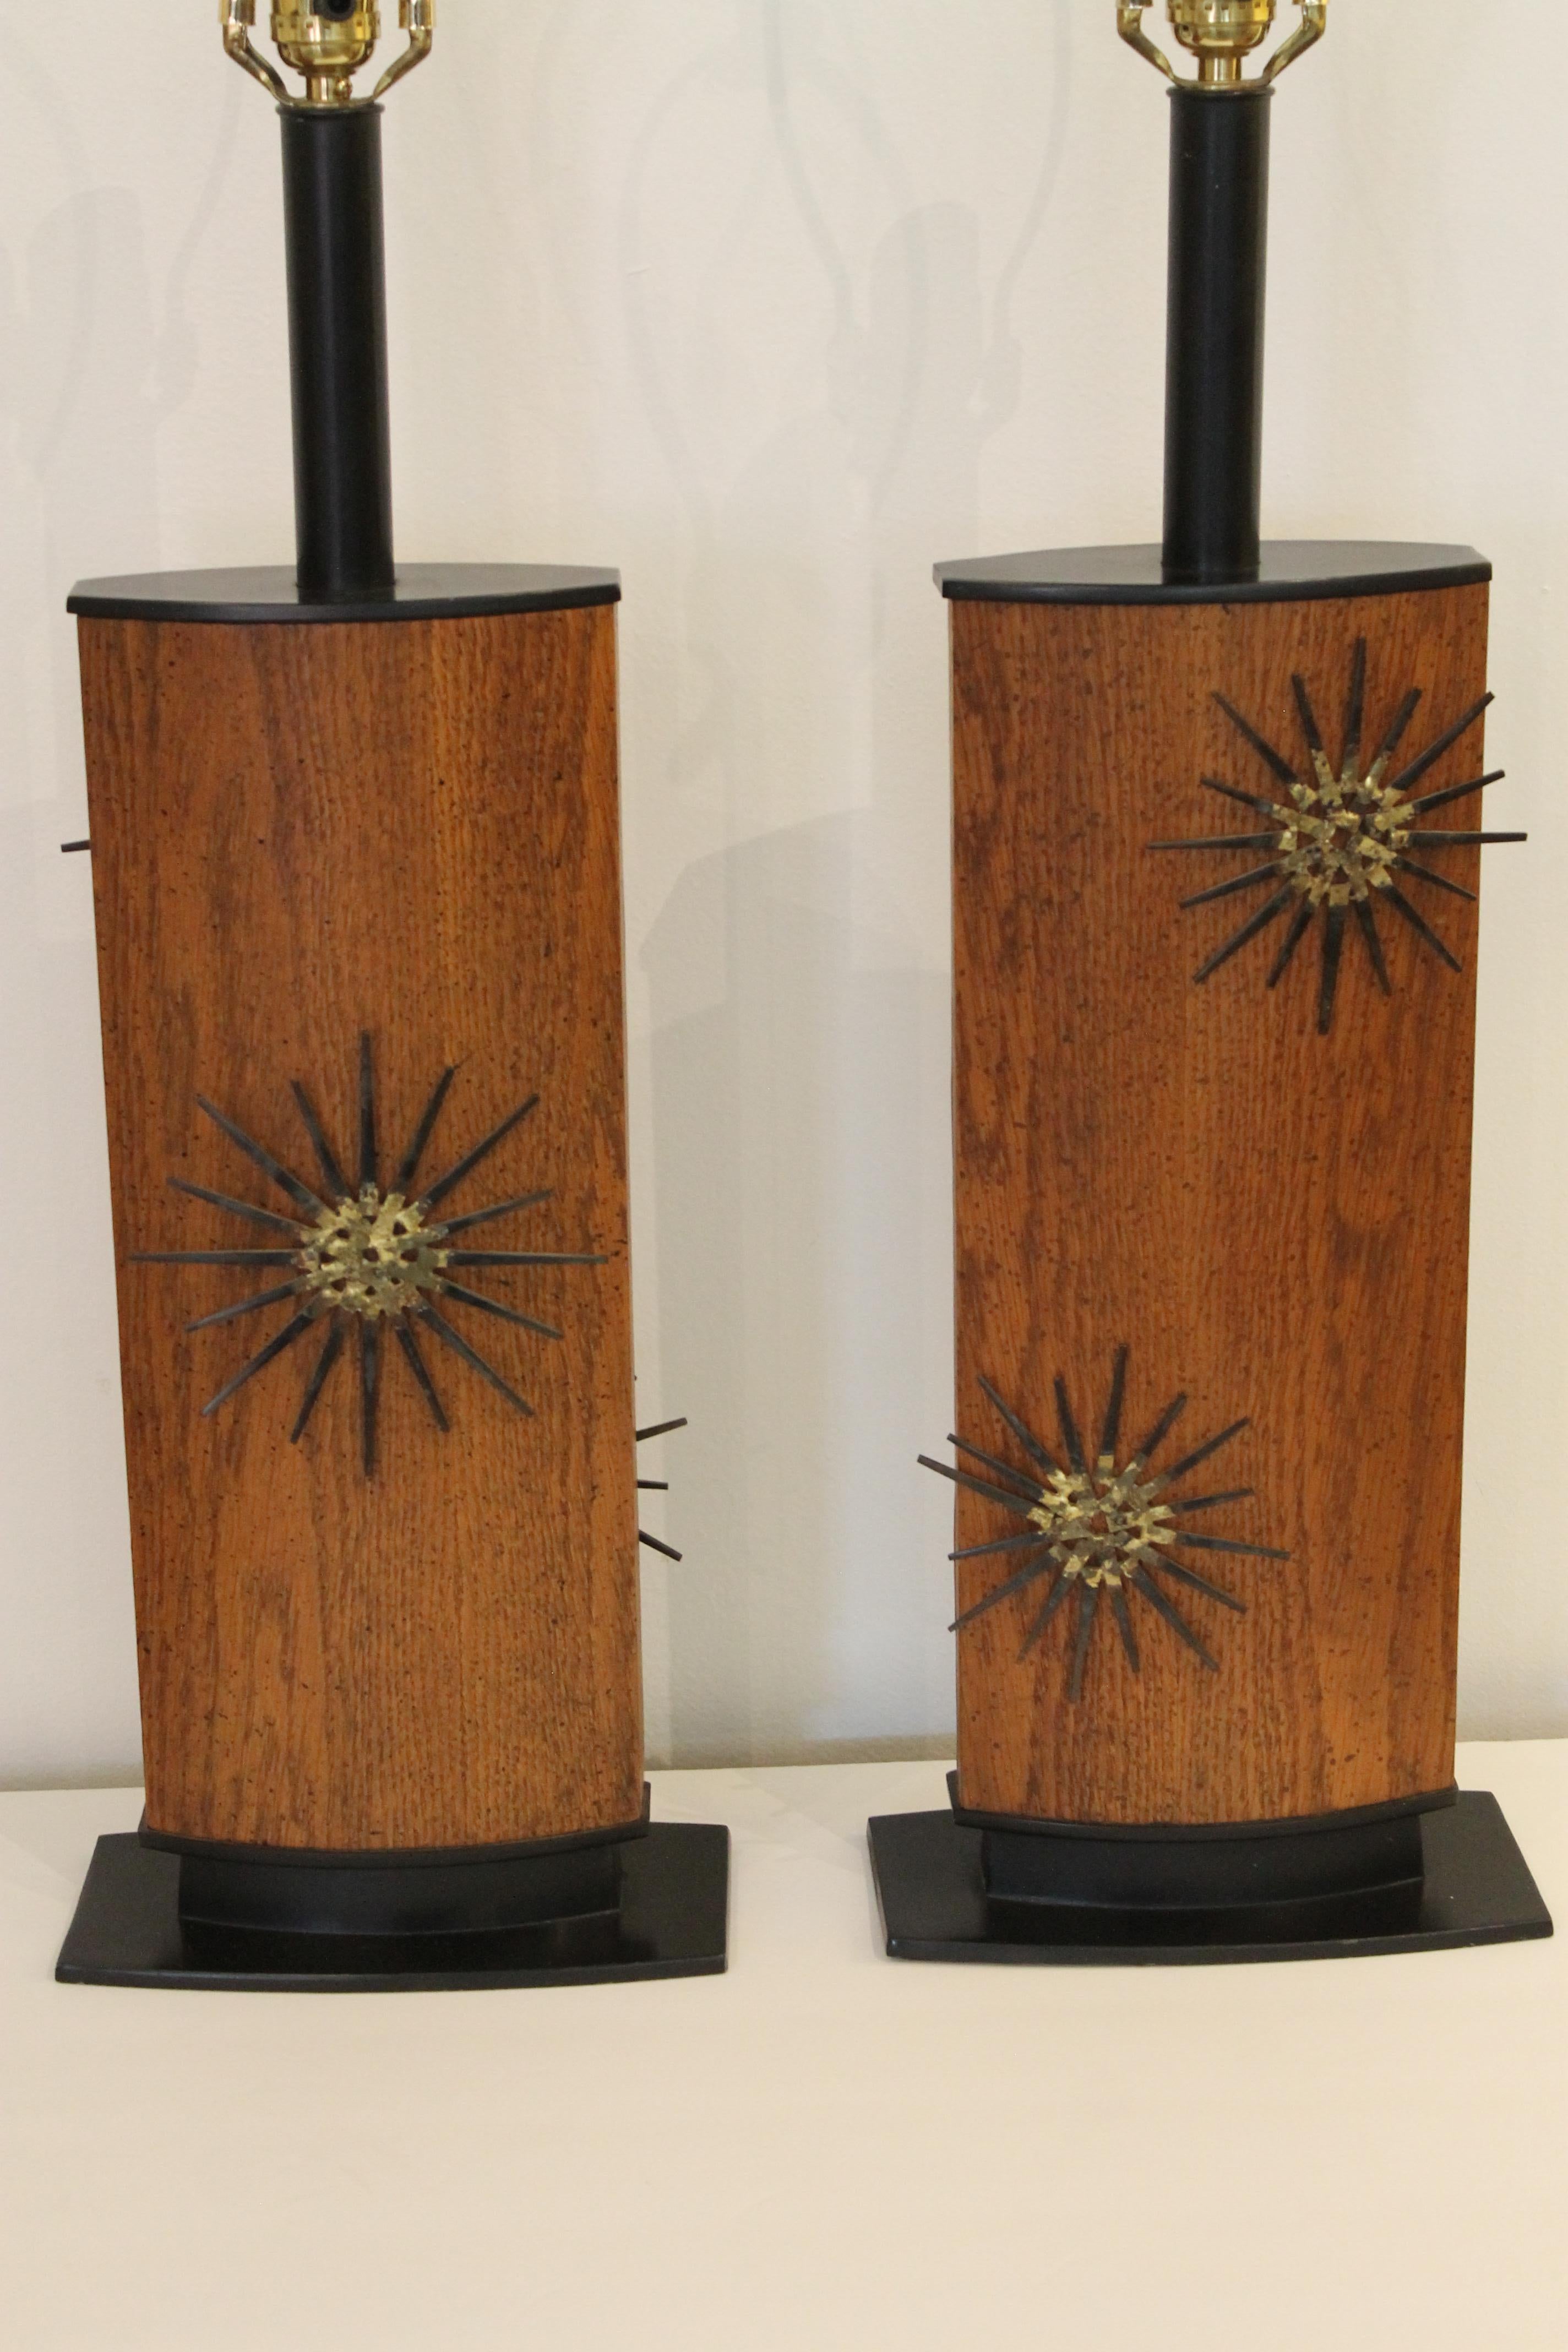 Paire assortie de lampes de table en acier et bois peints, avec des éléments sunburst nail art à l'avant et à l'arrière. La caractéristique intéressante est que les lampes sont réversibles. La partie centrale en bois pivote sur la base, de sorte que